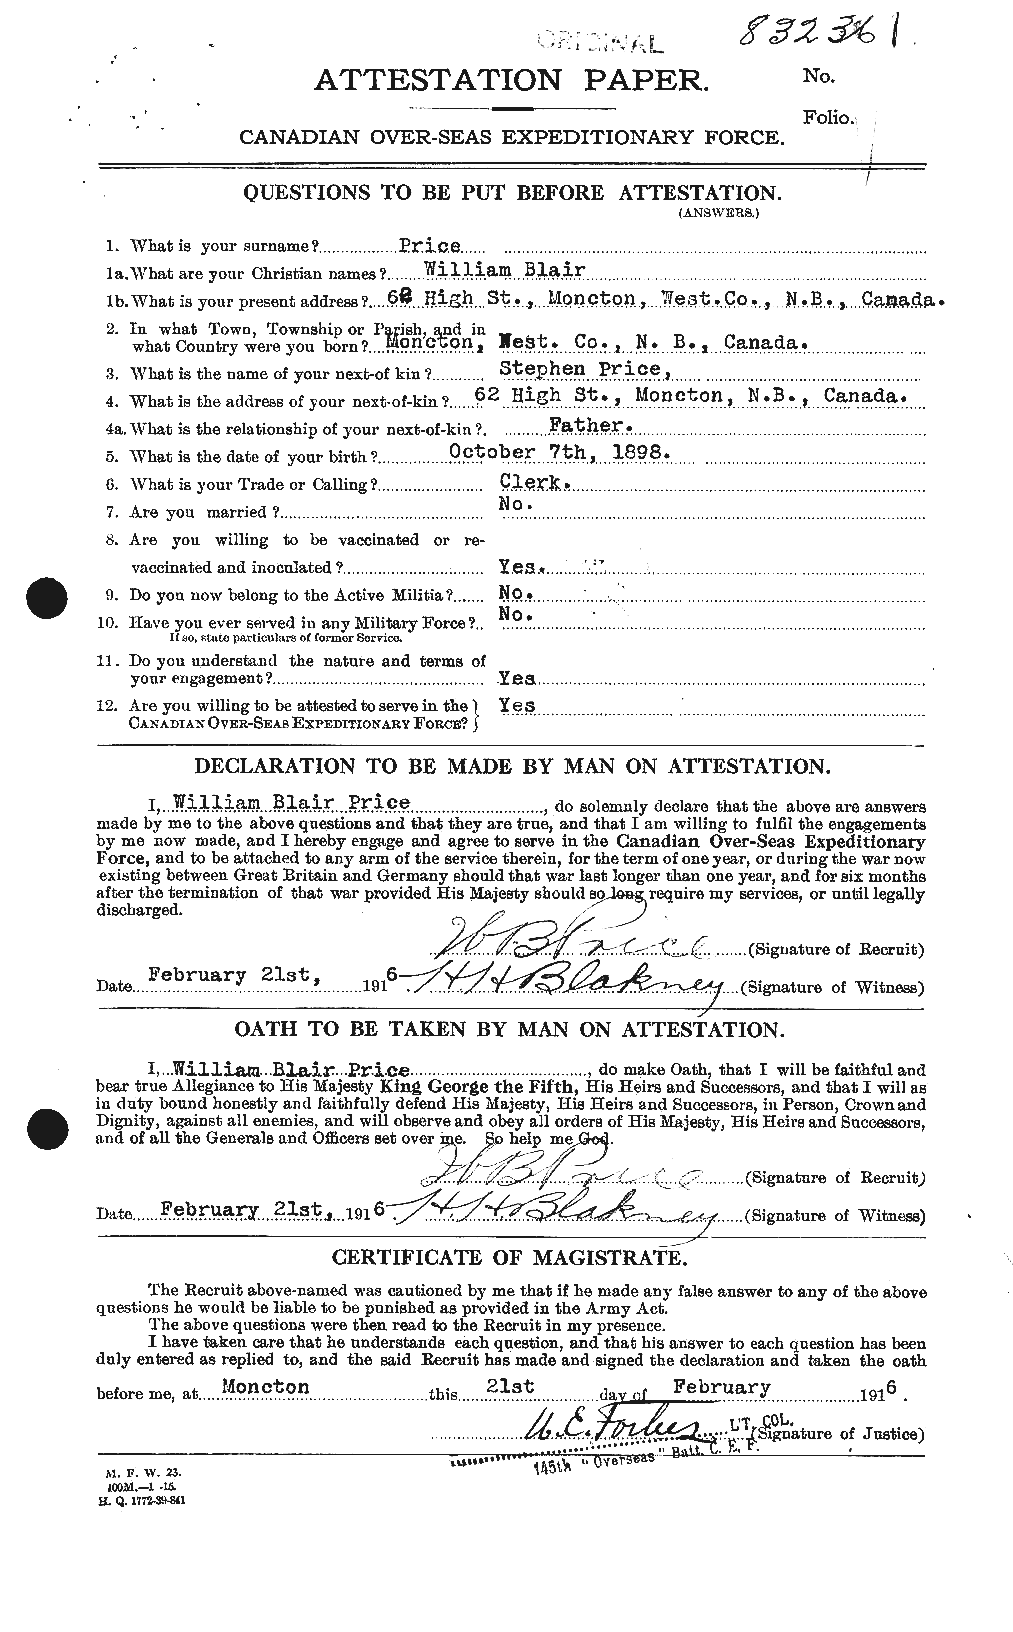 Dossiers du Personnel de la Première Guerre mondiale - CEC 587430a